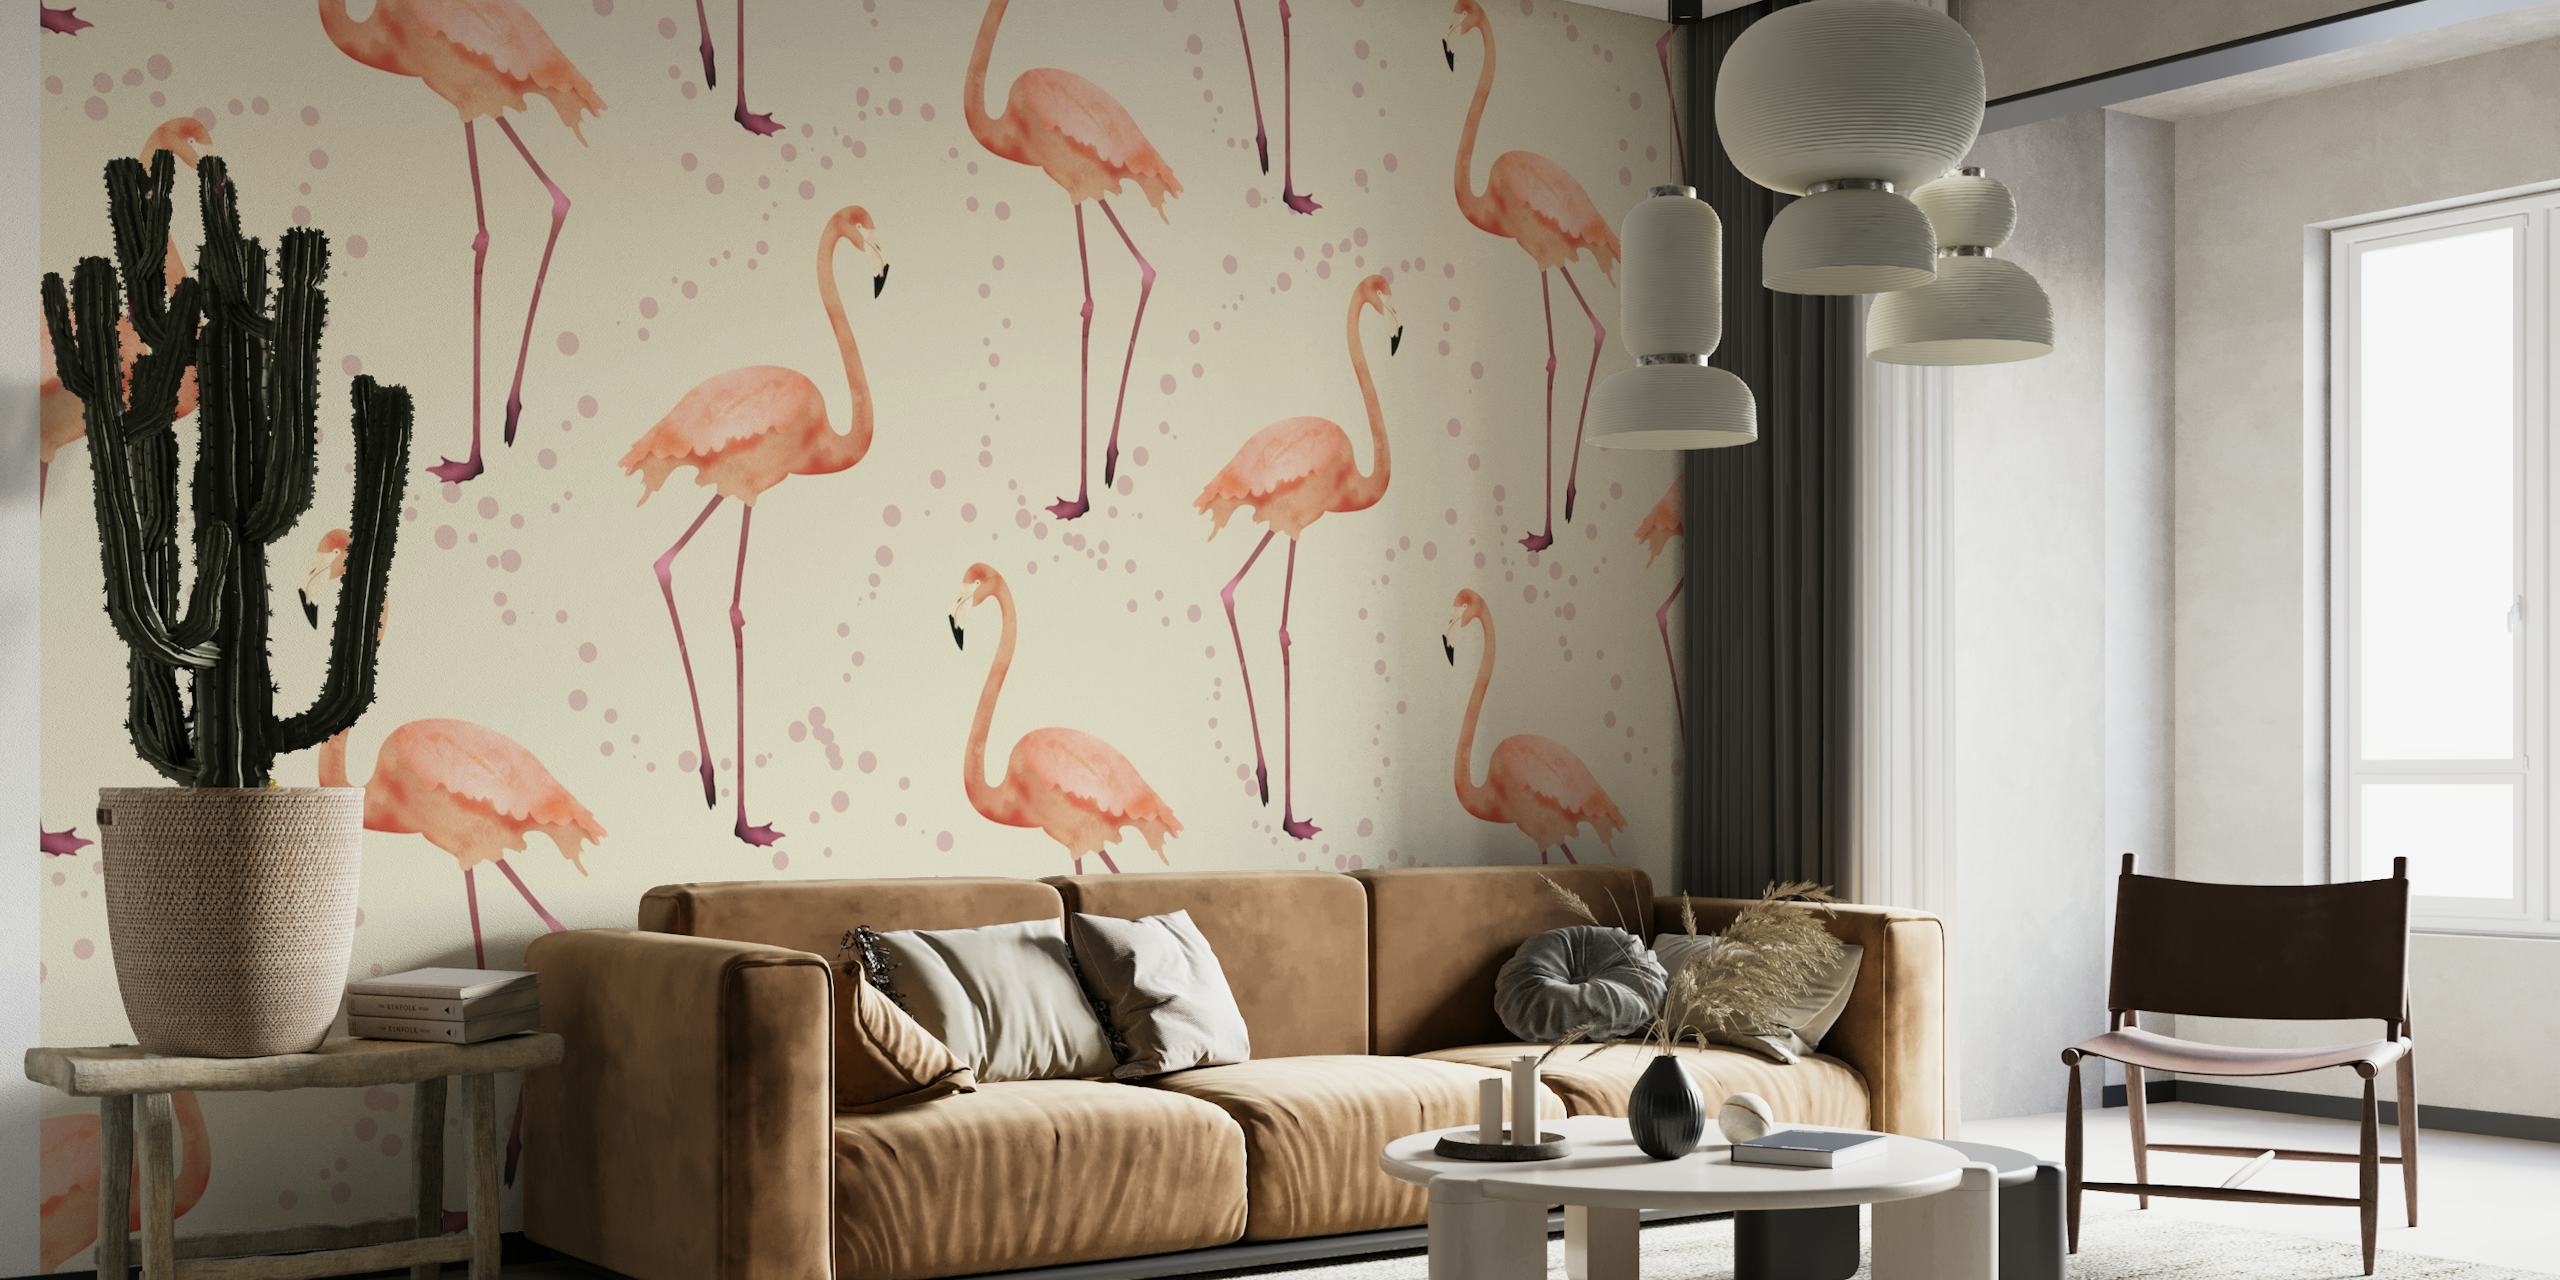 The Flamingo Dance pearl papiers peint